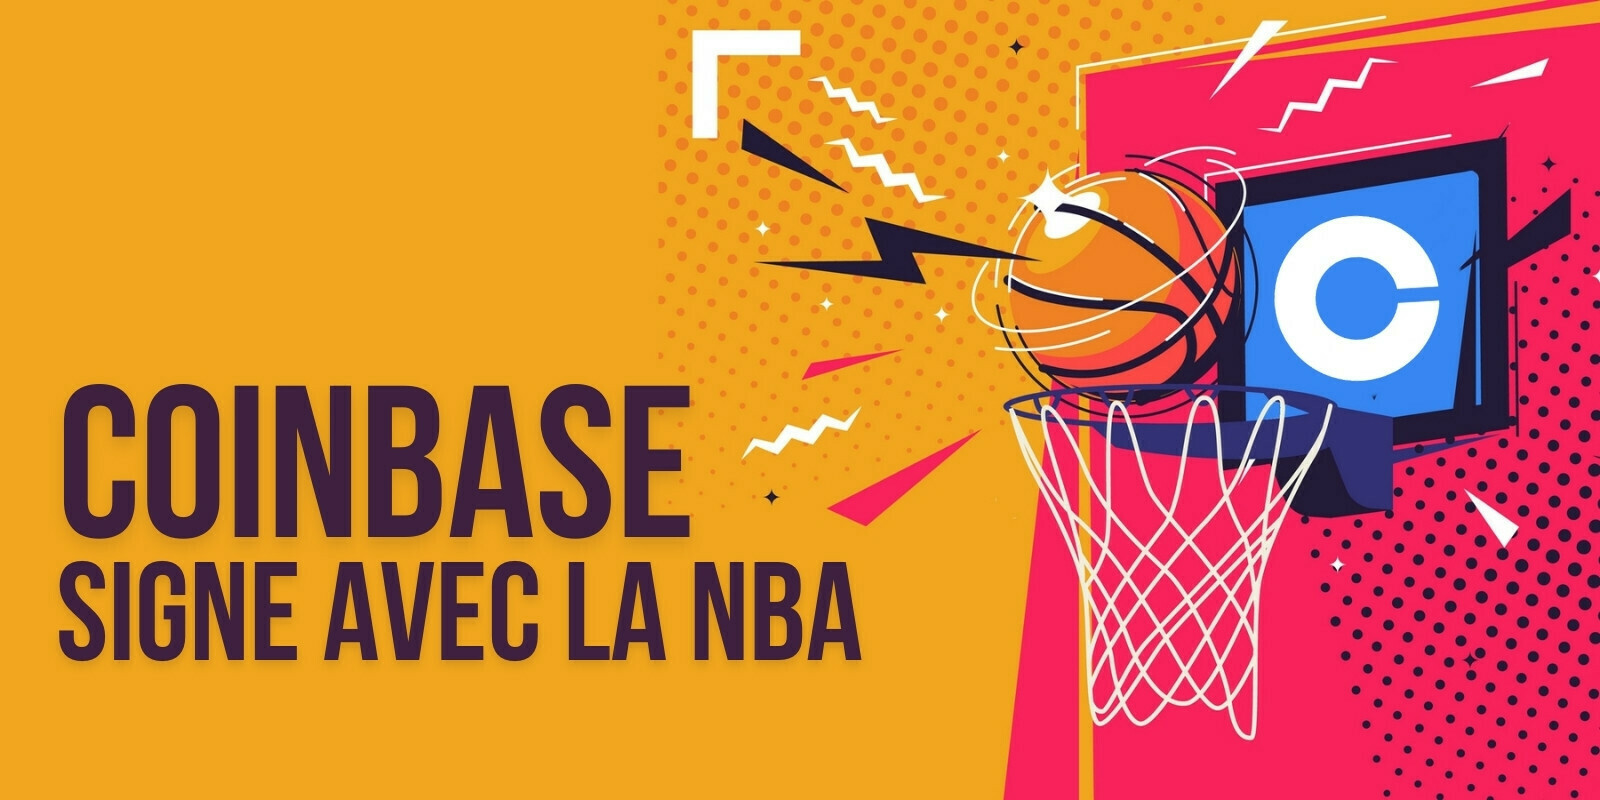 Coinbase devient un sponsor de la NBA pour plusieurs années